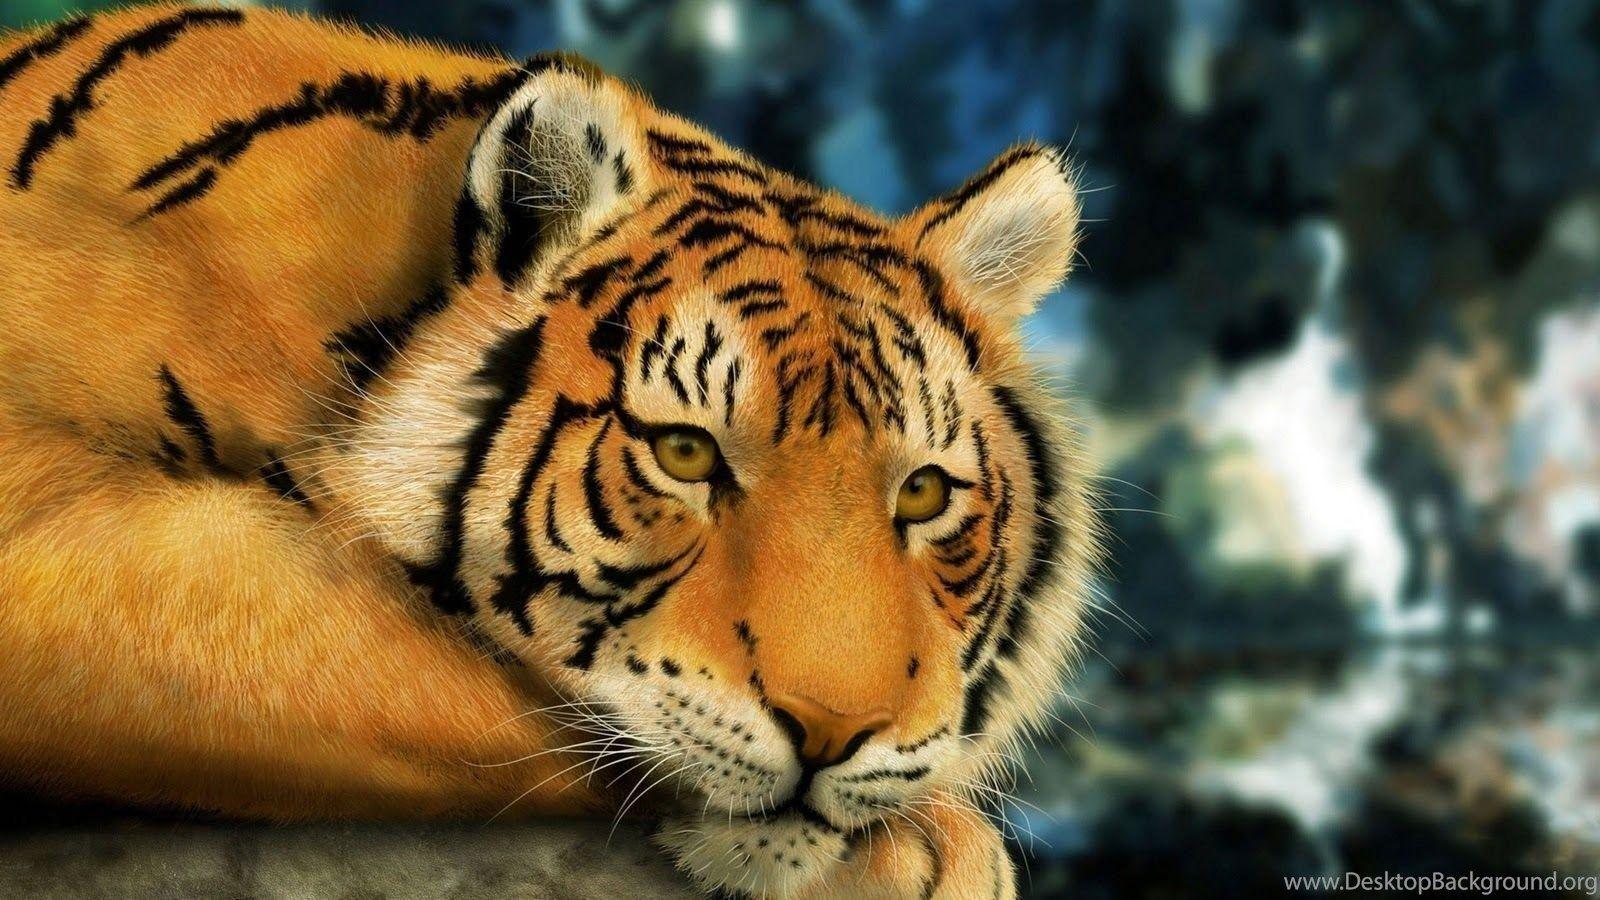 Beast Tiger Desktop Wallpaper Zibrato Desktop Background